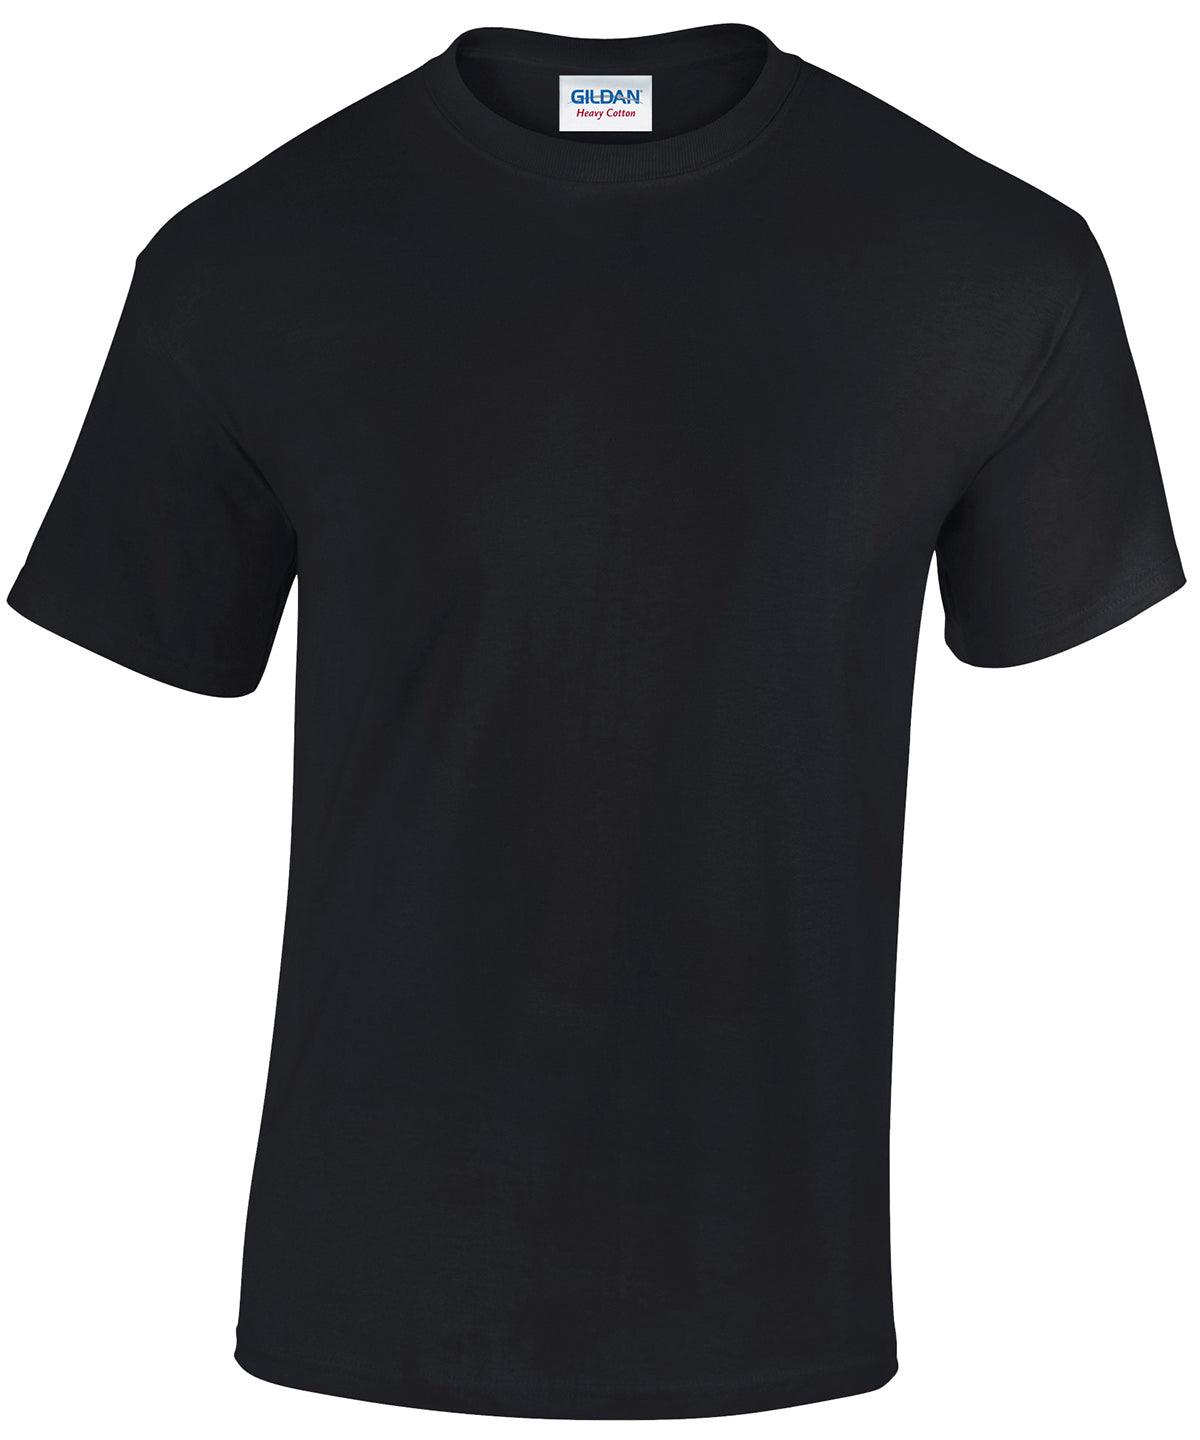 Heavy Cotton adult t-shirt | Black